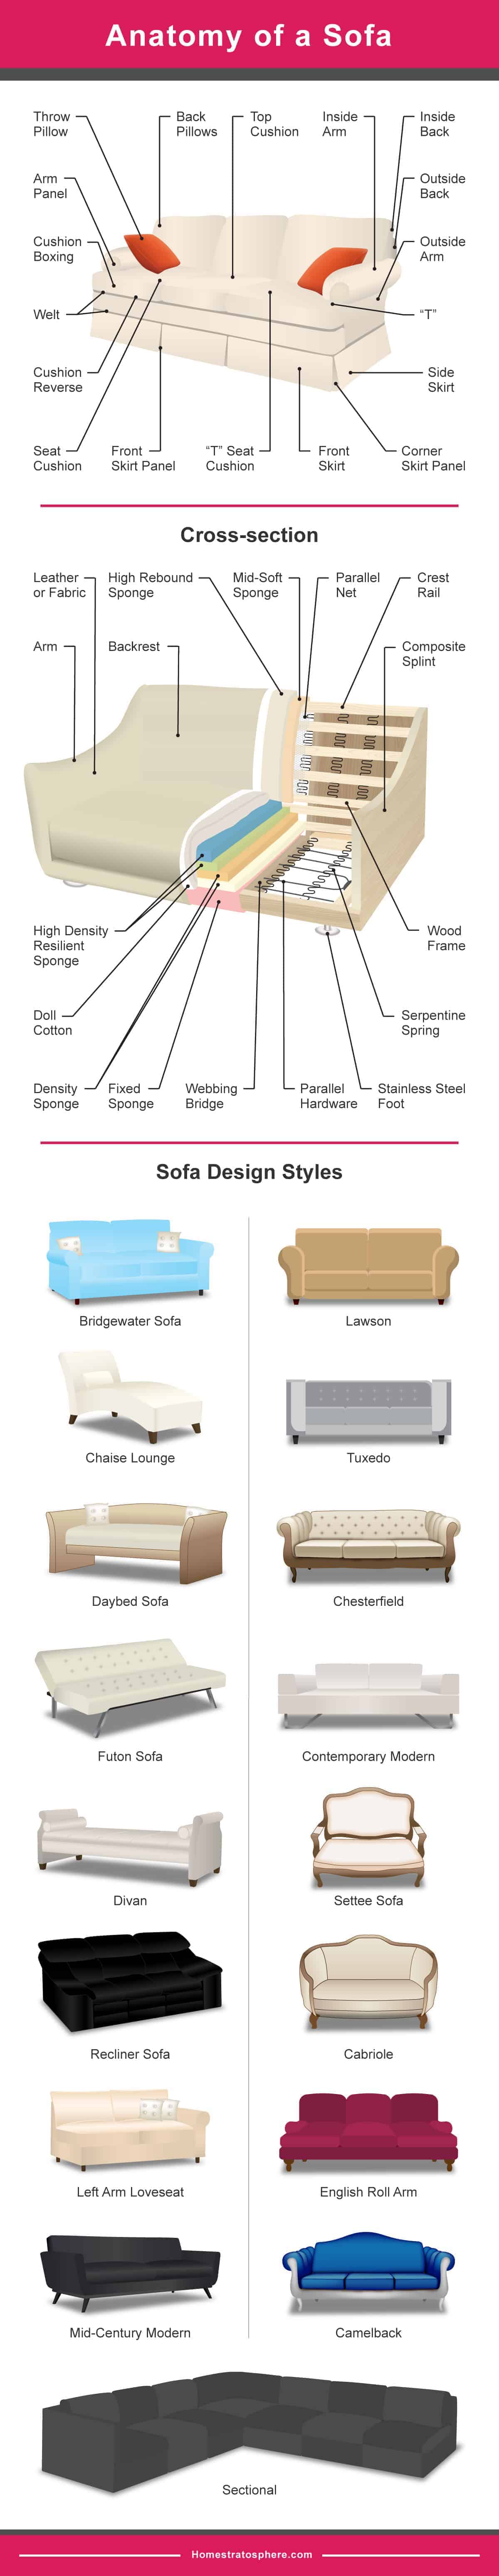 列出不同类型沙发和沙发解剖结构的示意图